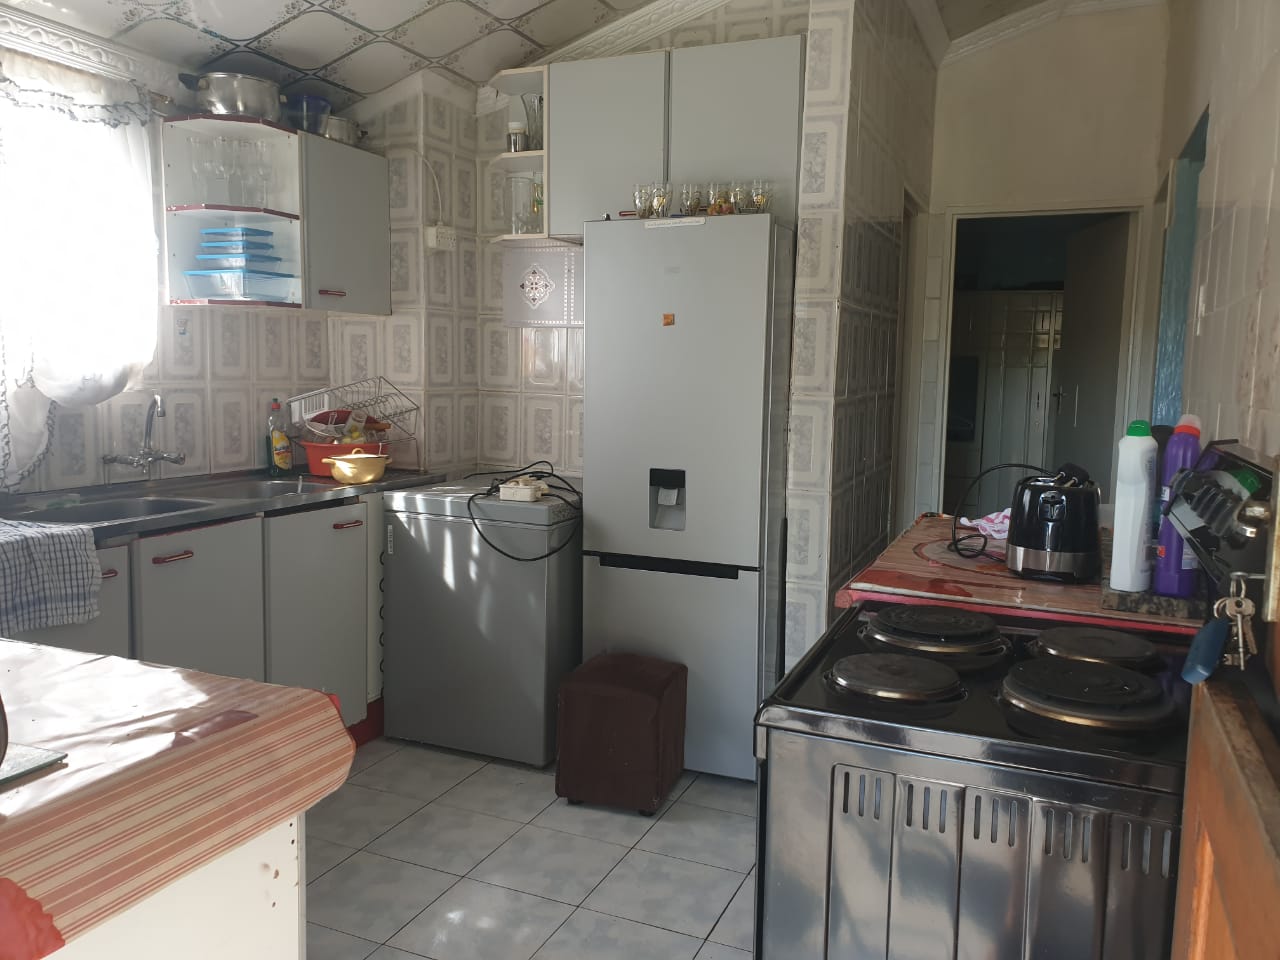 2 Bedroom Property for Sale in Cool Air KwaZulu-Natal